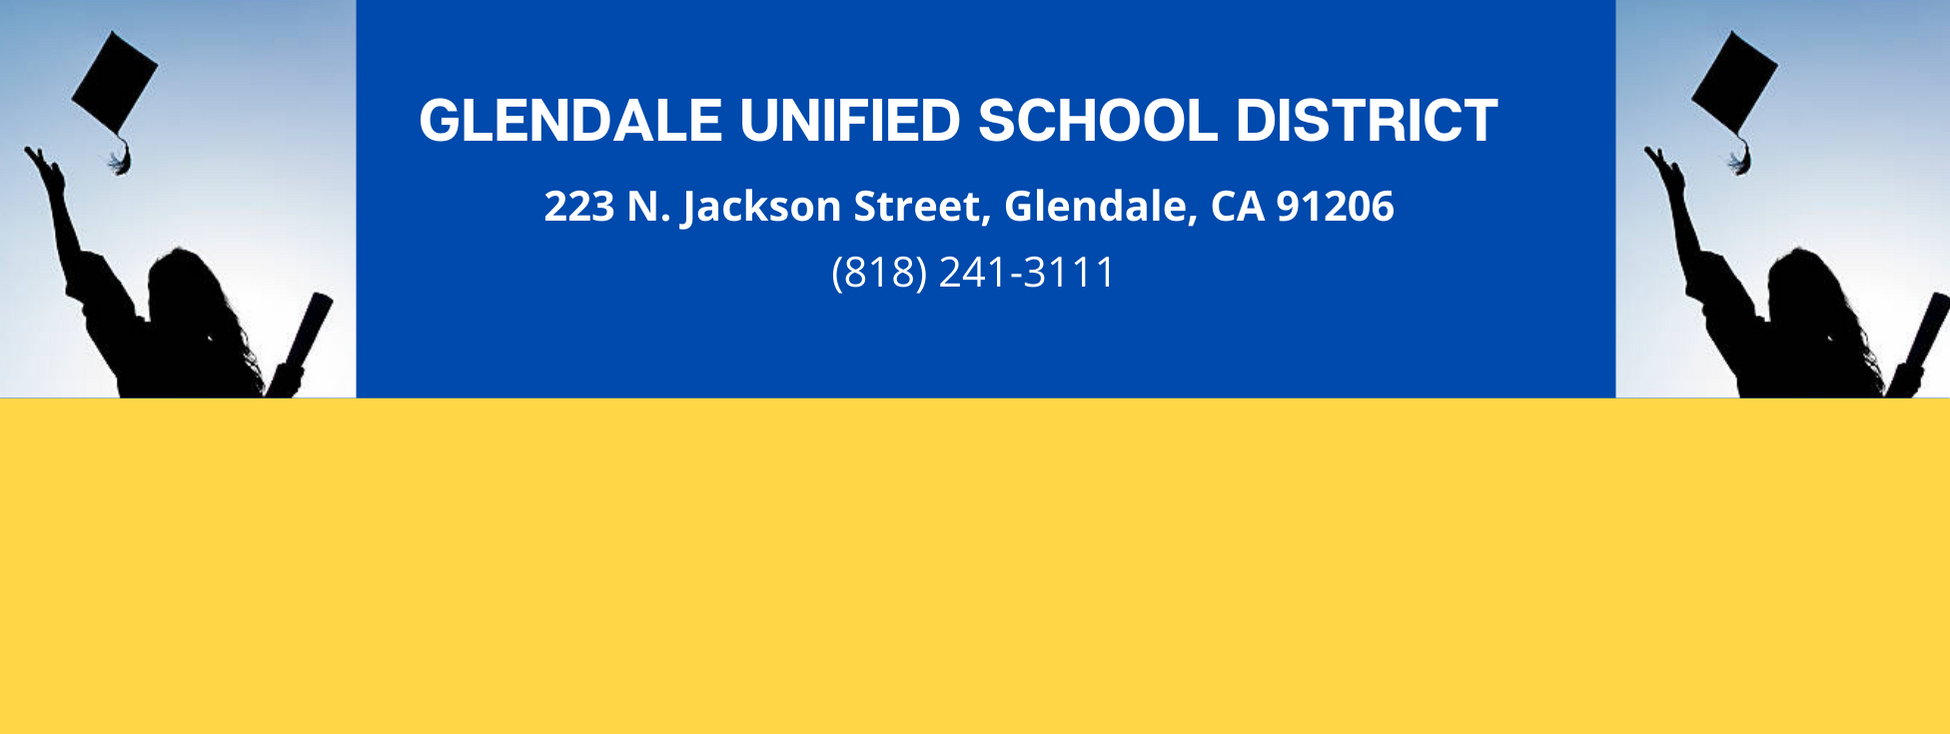 Glendale Unified School District Logo